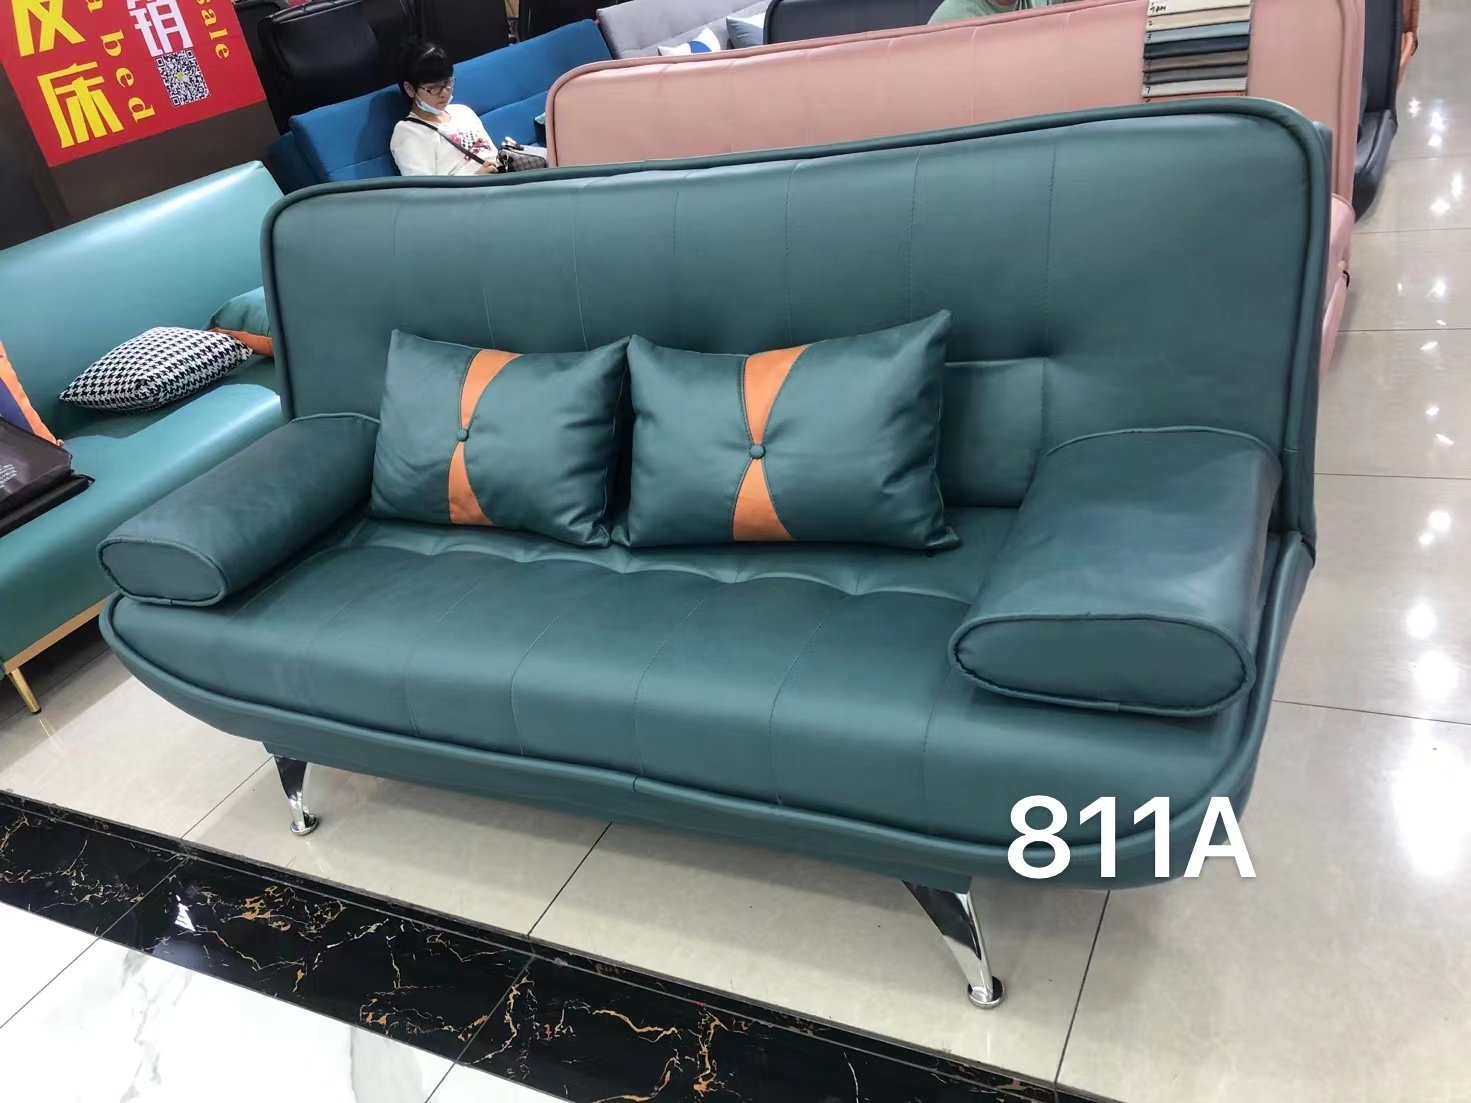 sofa bed hiện đại nhập khẩu GR812A